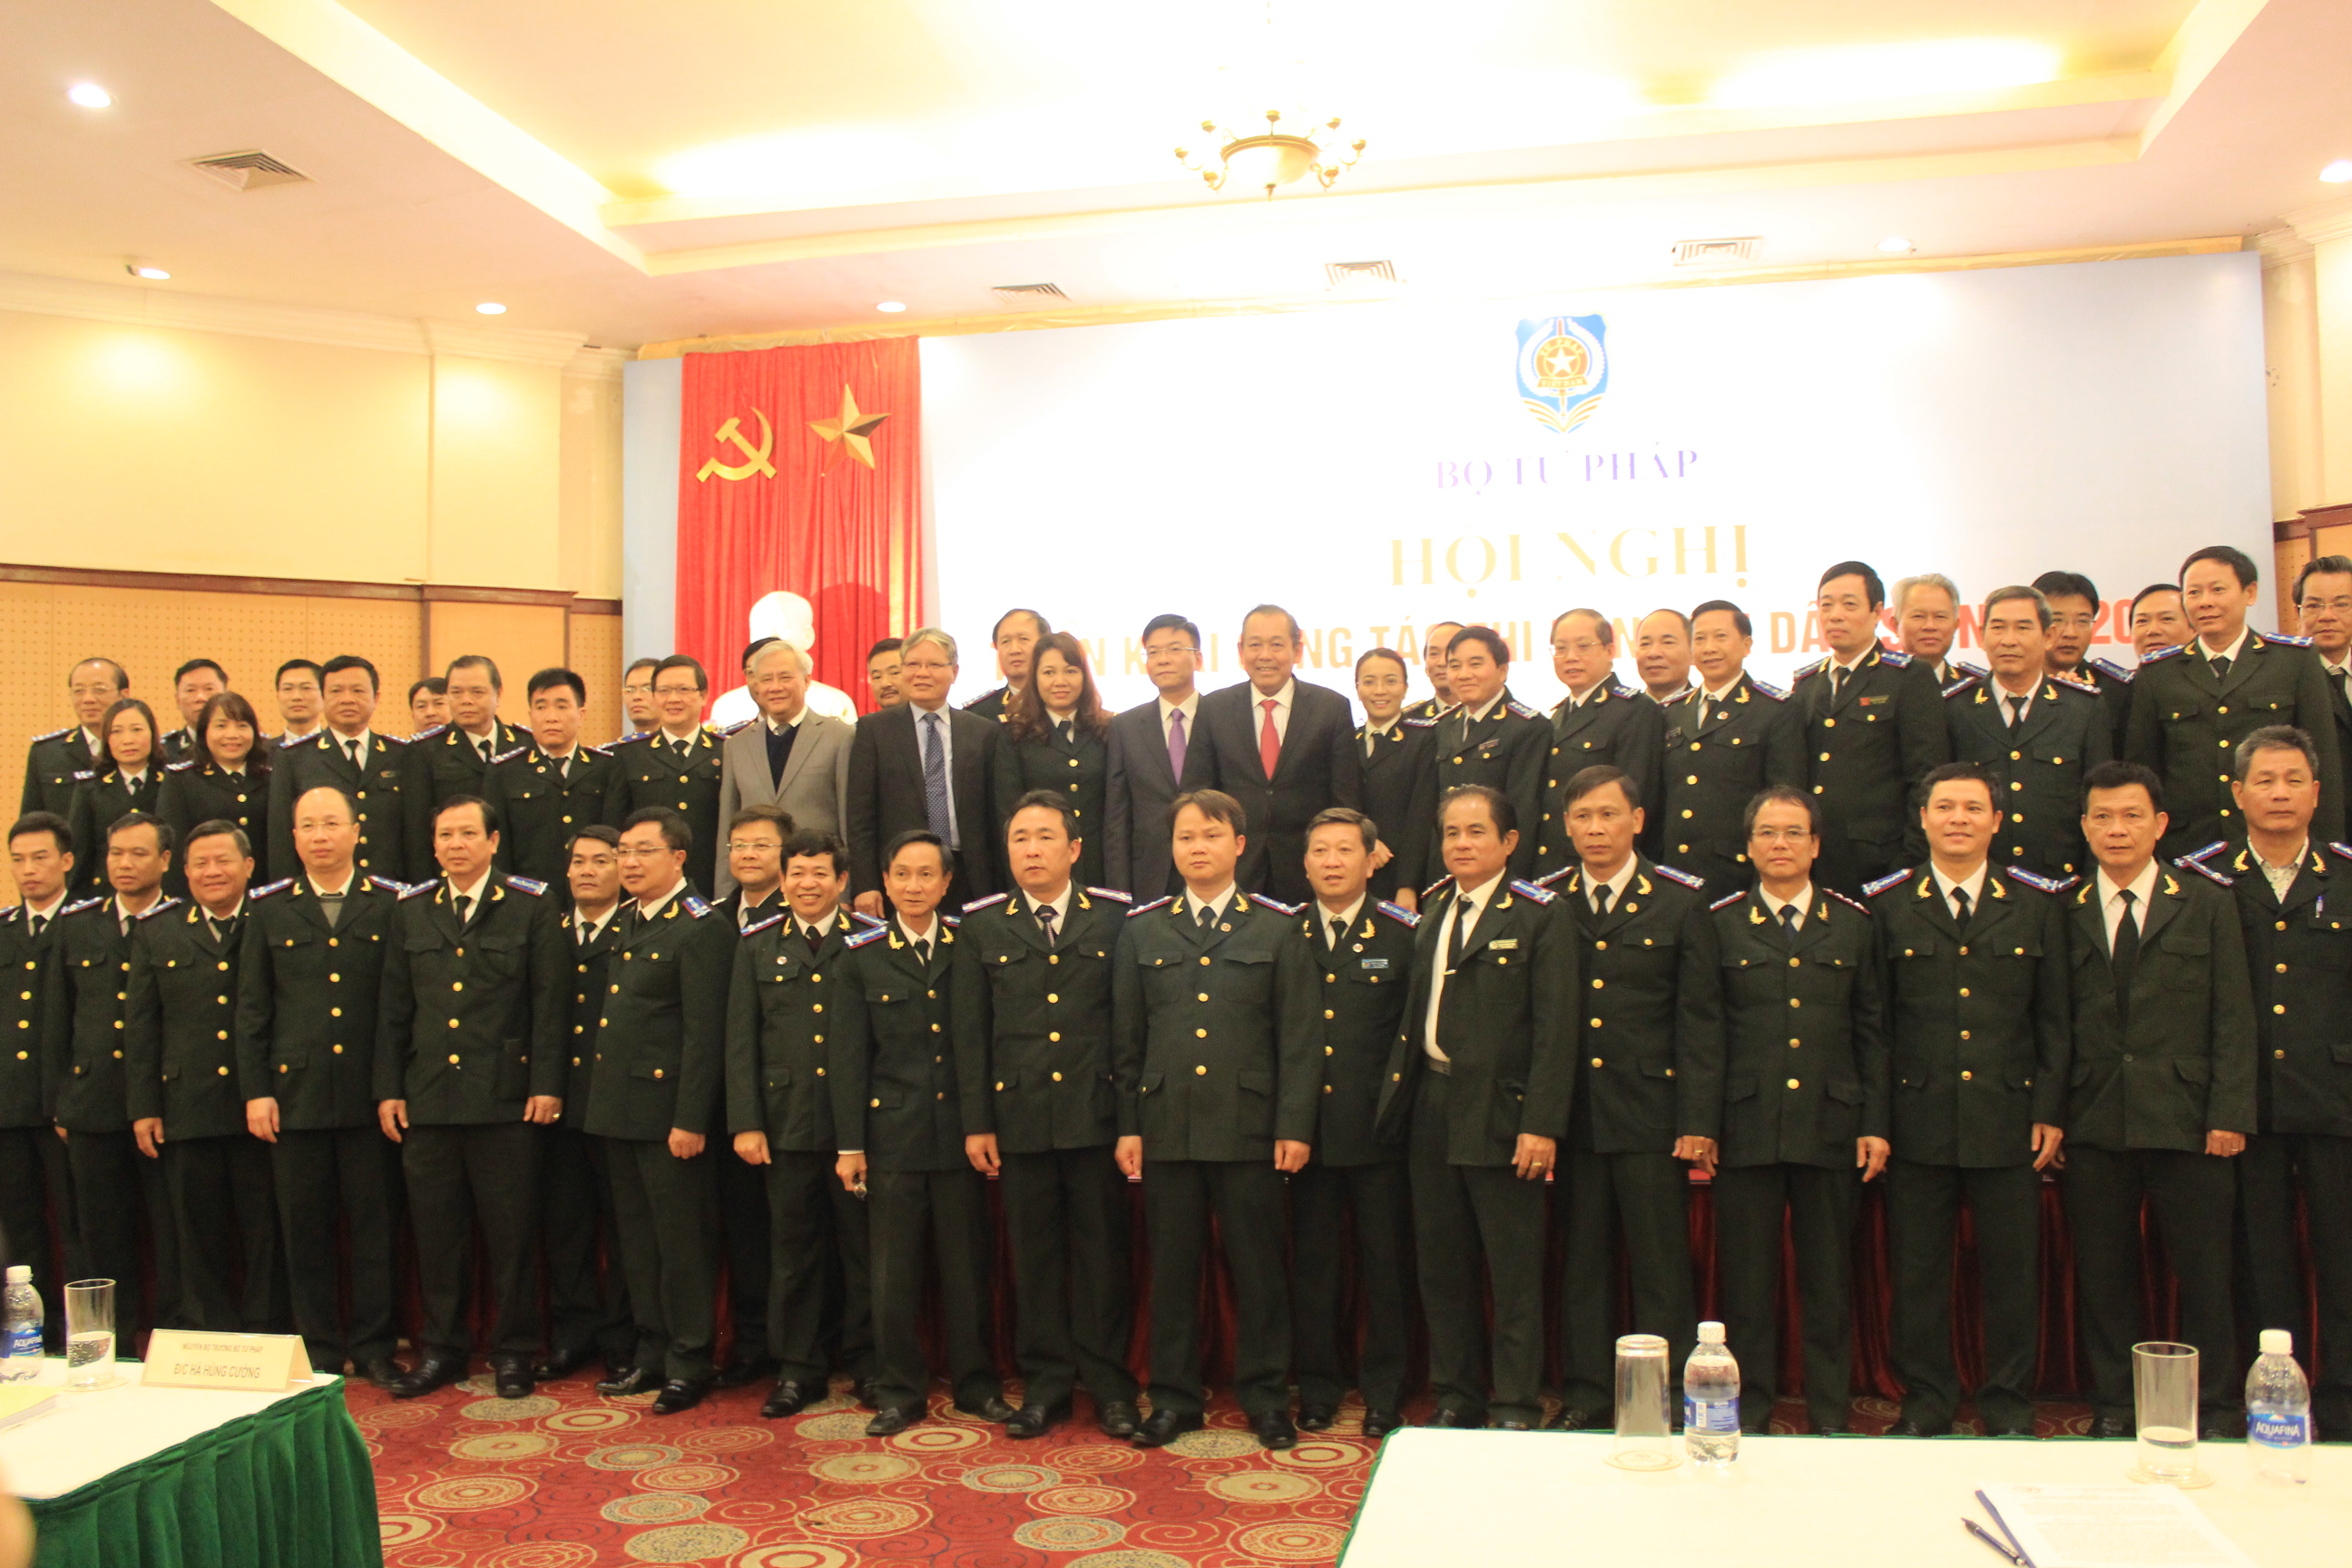 Cục THADS tỉnh Bà Rịa-Vũng Tàu tham dự hội nghị triển khai công tác năm 2018 tại Hà Nội